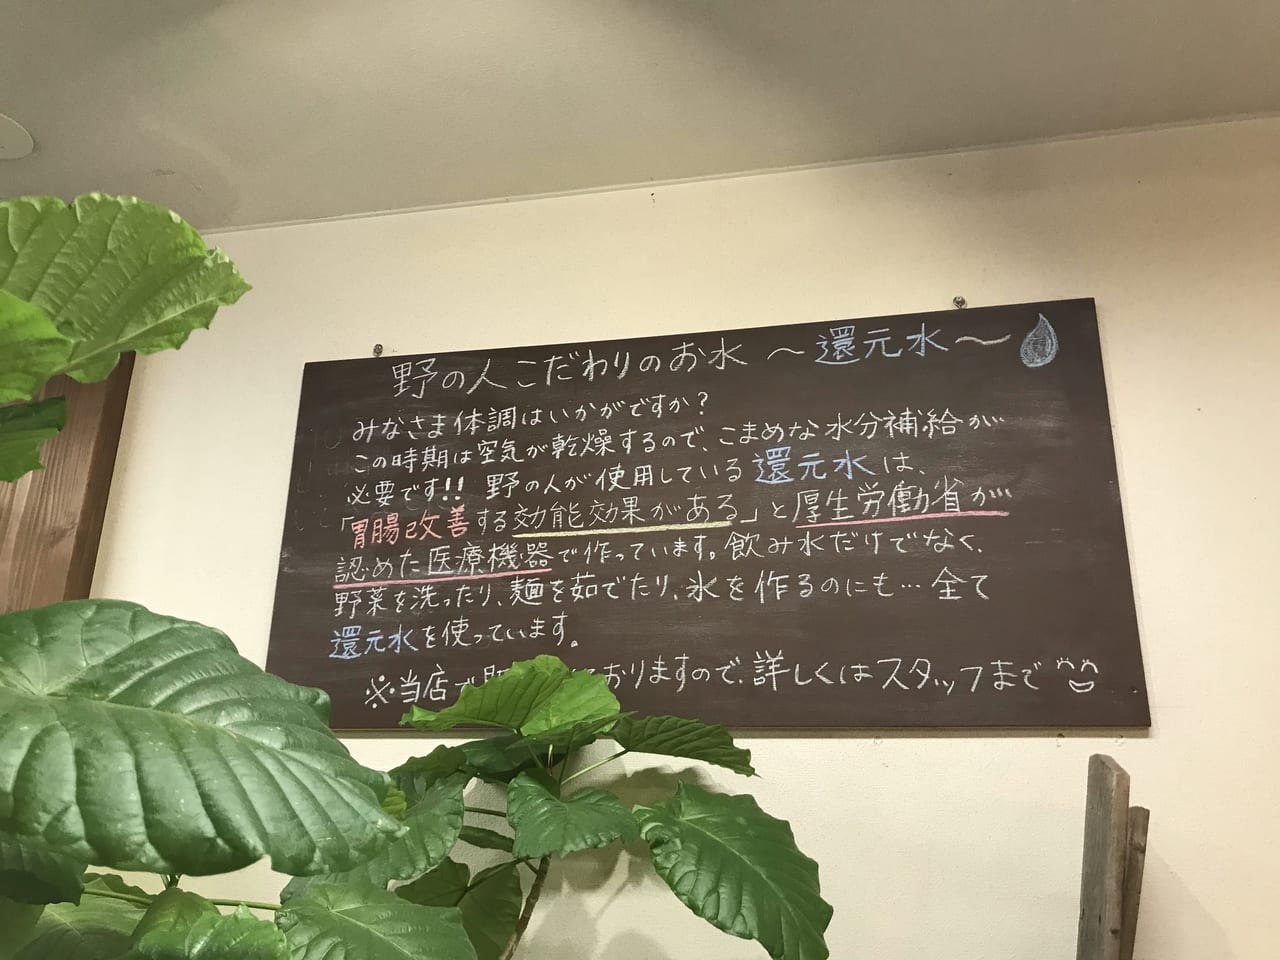 世田谷区九品仏NONOHITOはレトロで新しいオリジナルなめみそ、手作り薫製、まぜそばのカフェです。